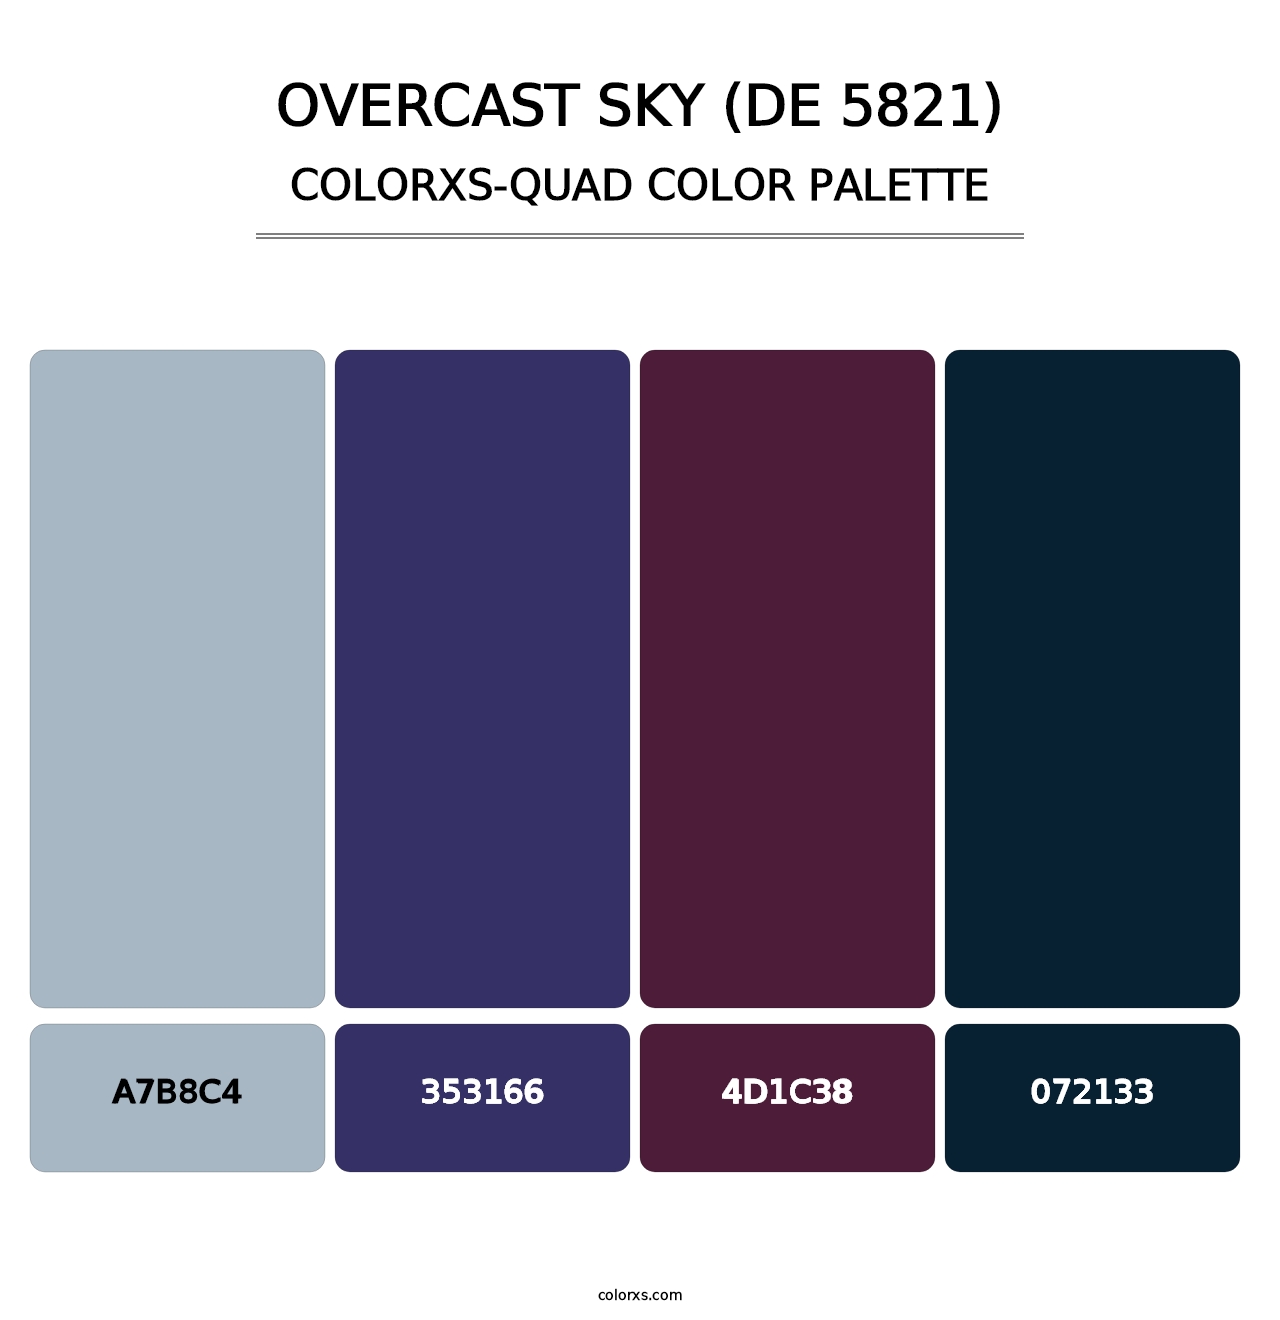 Overcast Sky (DE 5821) - Colorxs Quad Palette